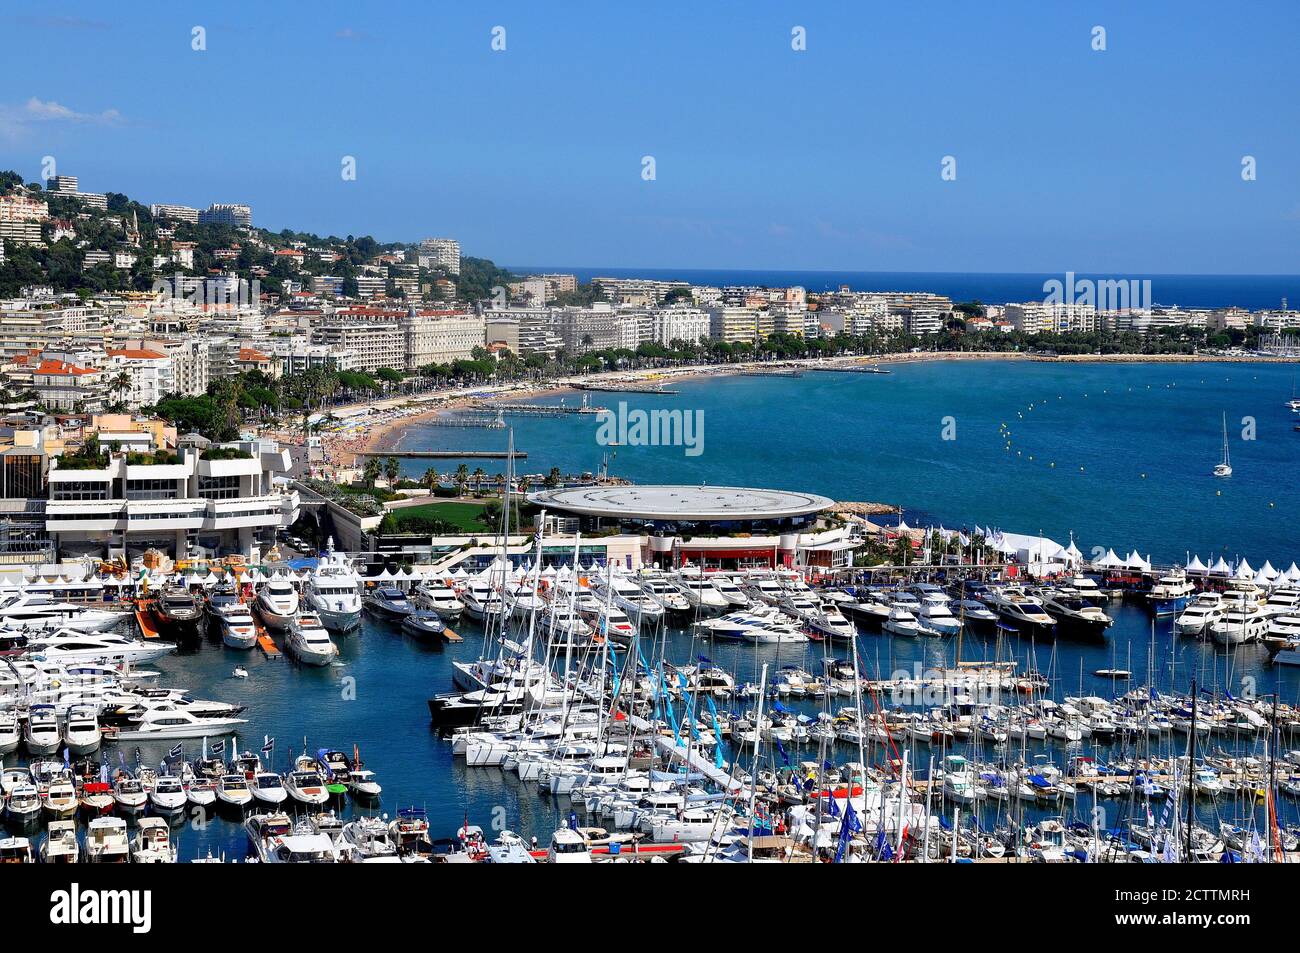 Frankreich, französische riviera, cannes, die Stadt des Kinos mit ihrem berühmten Croisette Boulevard und Yachthafen, einer herrlichen Bucht mit den Lerins Inseln. Stockfoto